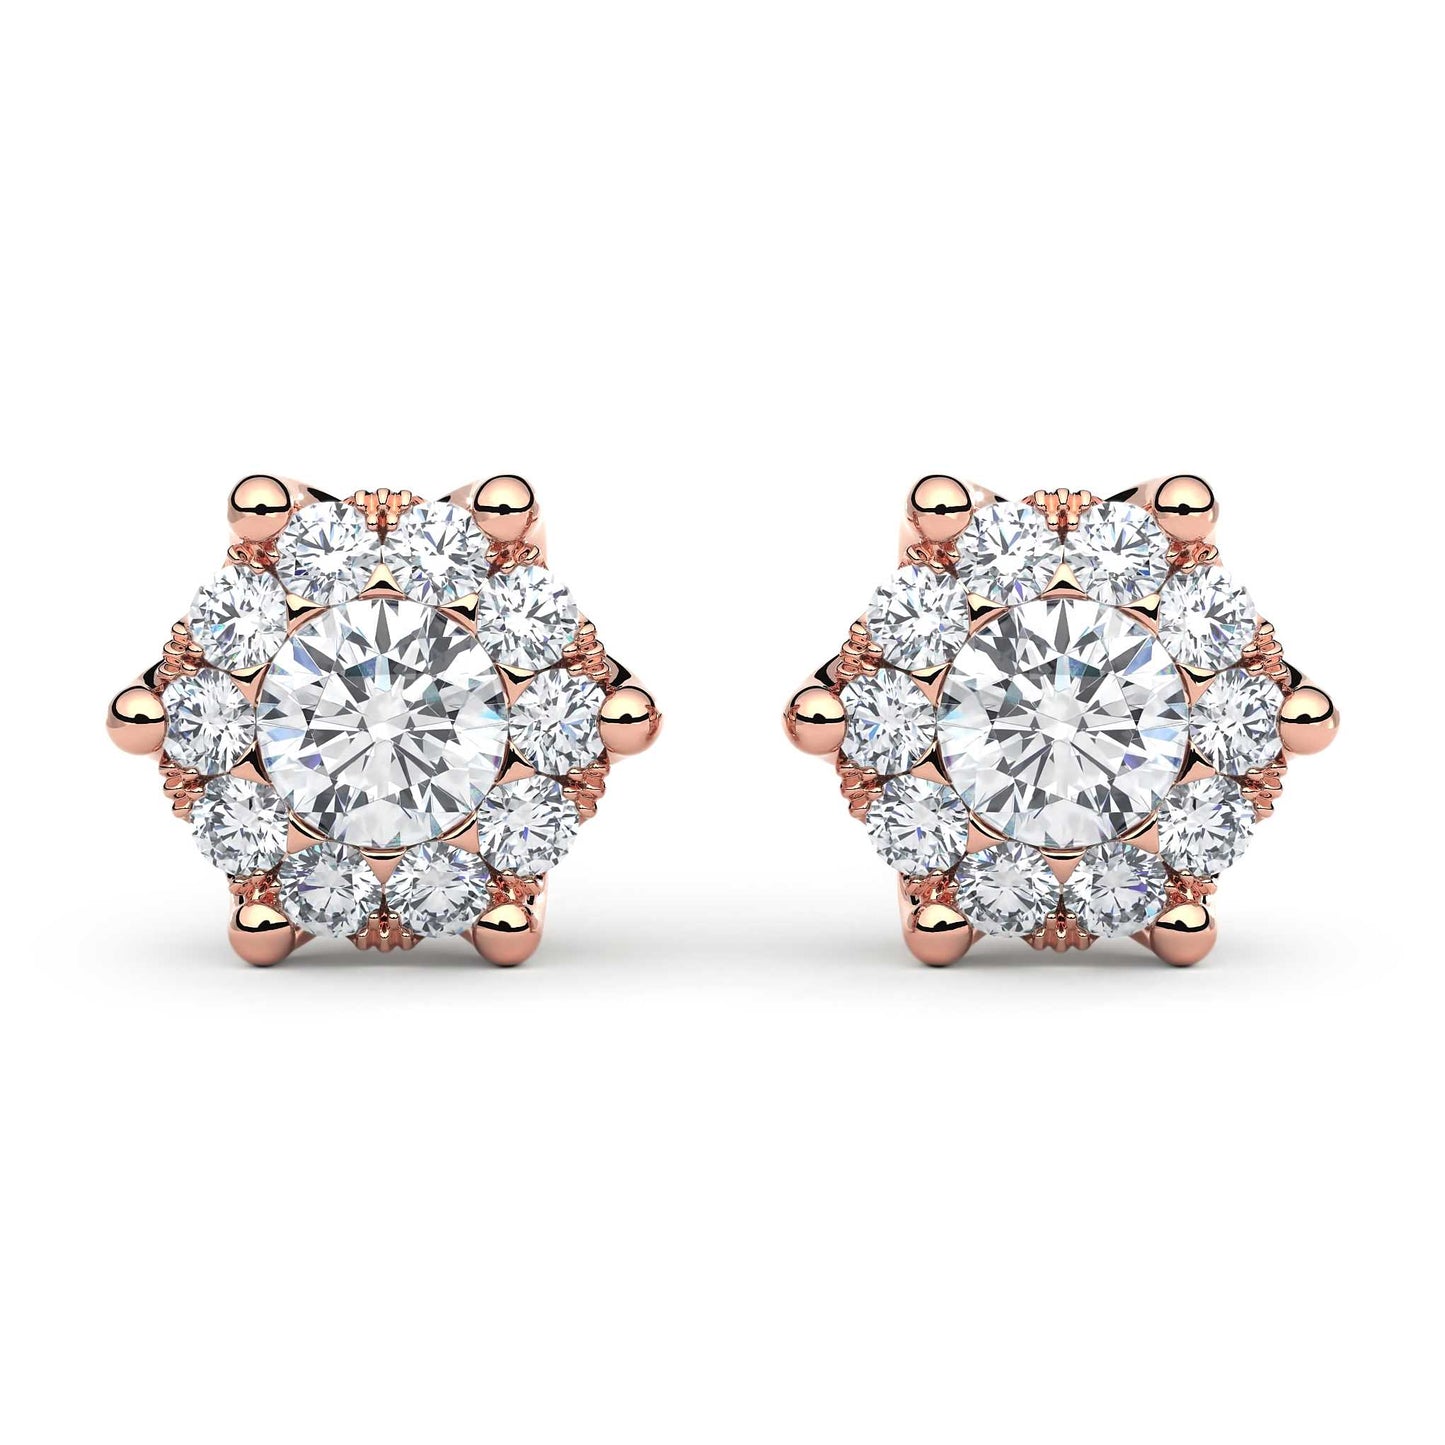 Suokko Timanttikorut -timanttikorvakorut rosakultaa, jossa istutettuna 22 timanttia. Tuotekoodi KE12846